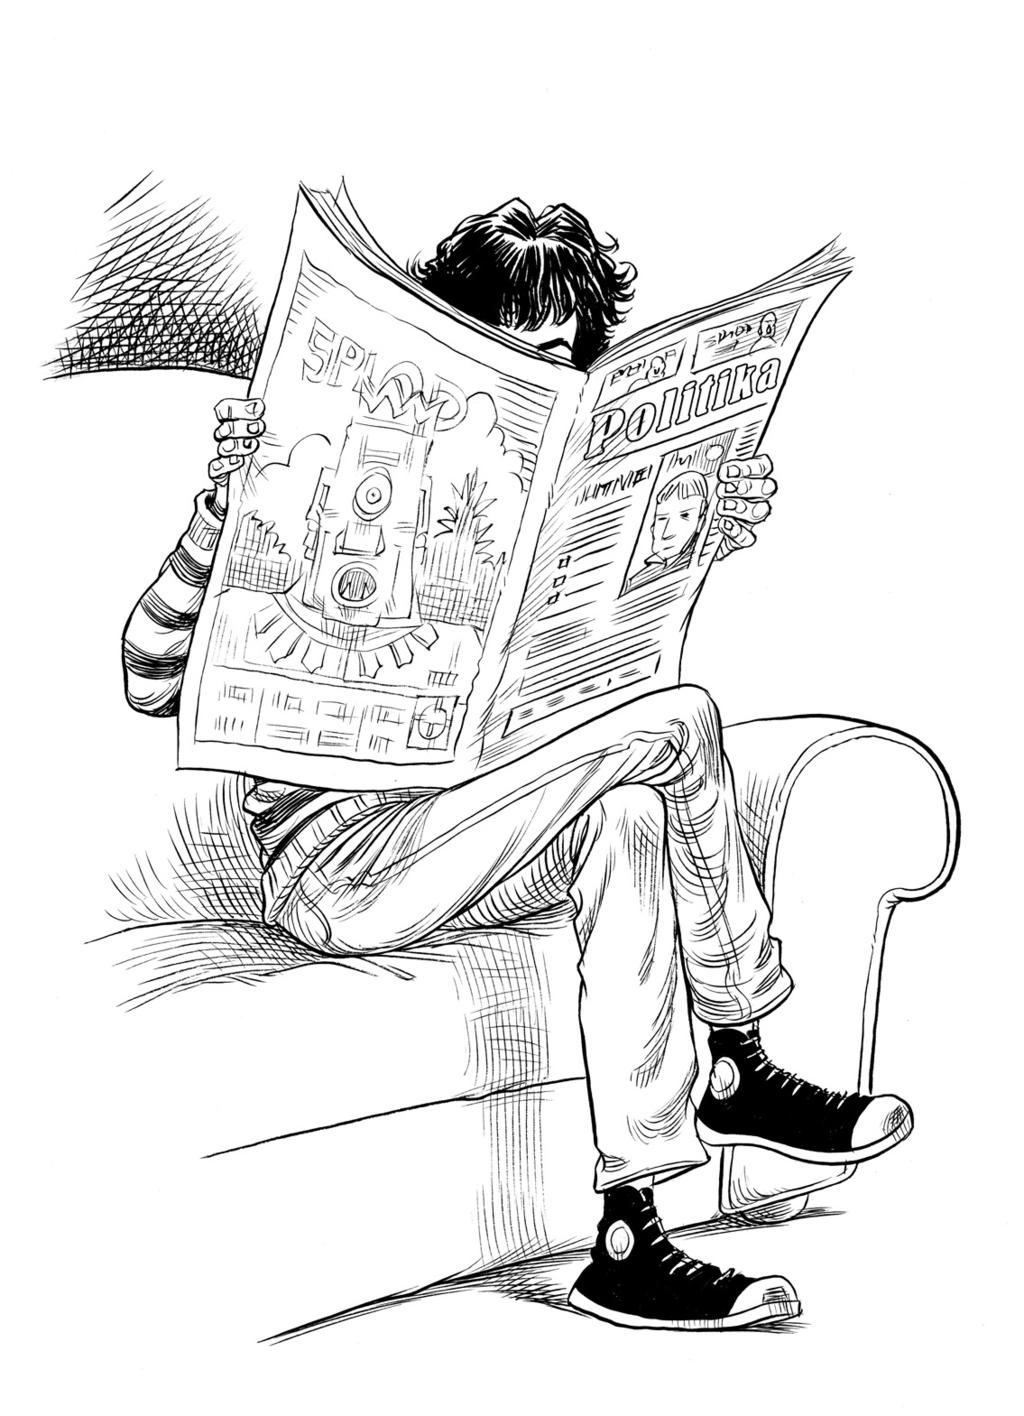 Tata je čitao novine.